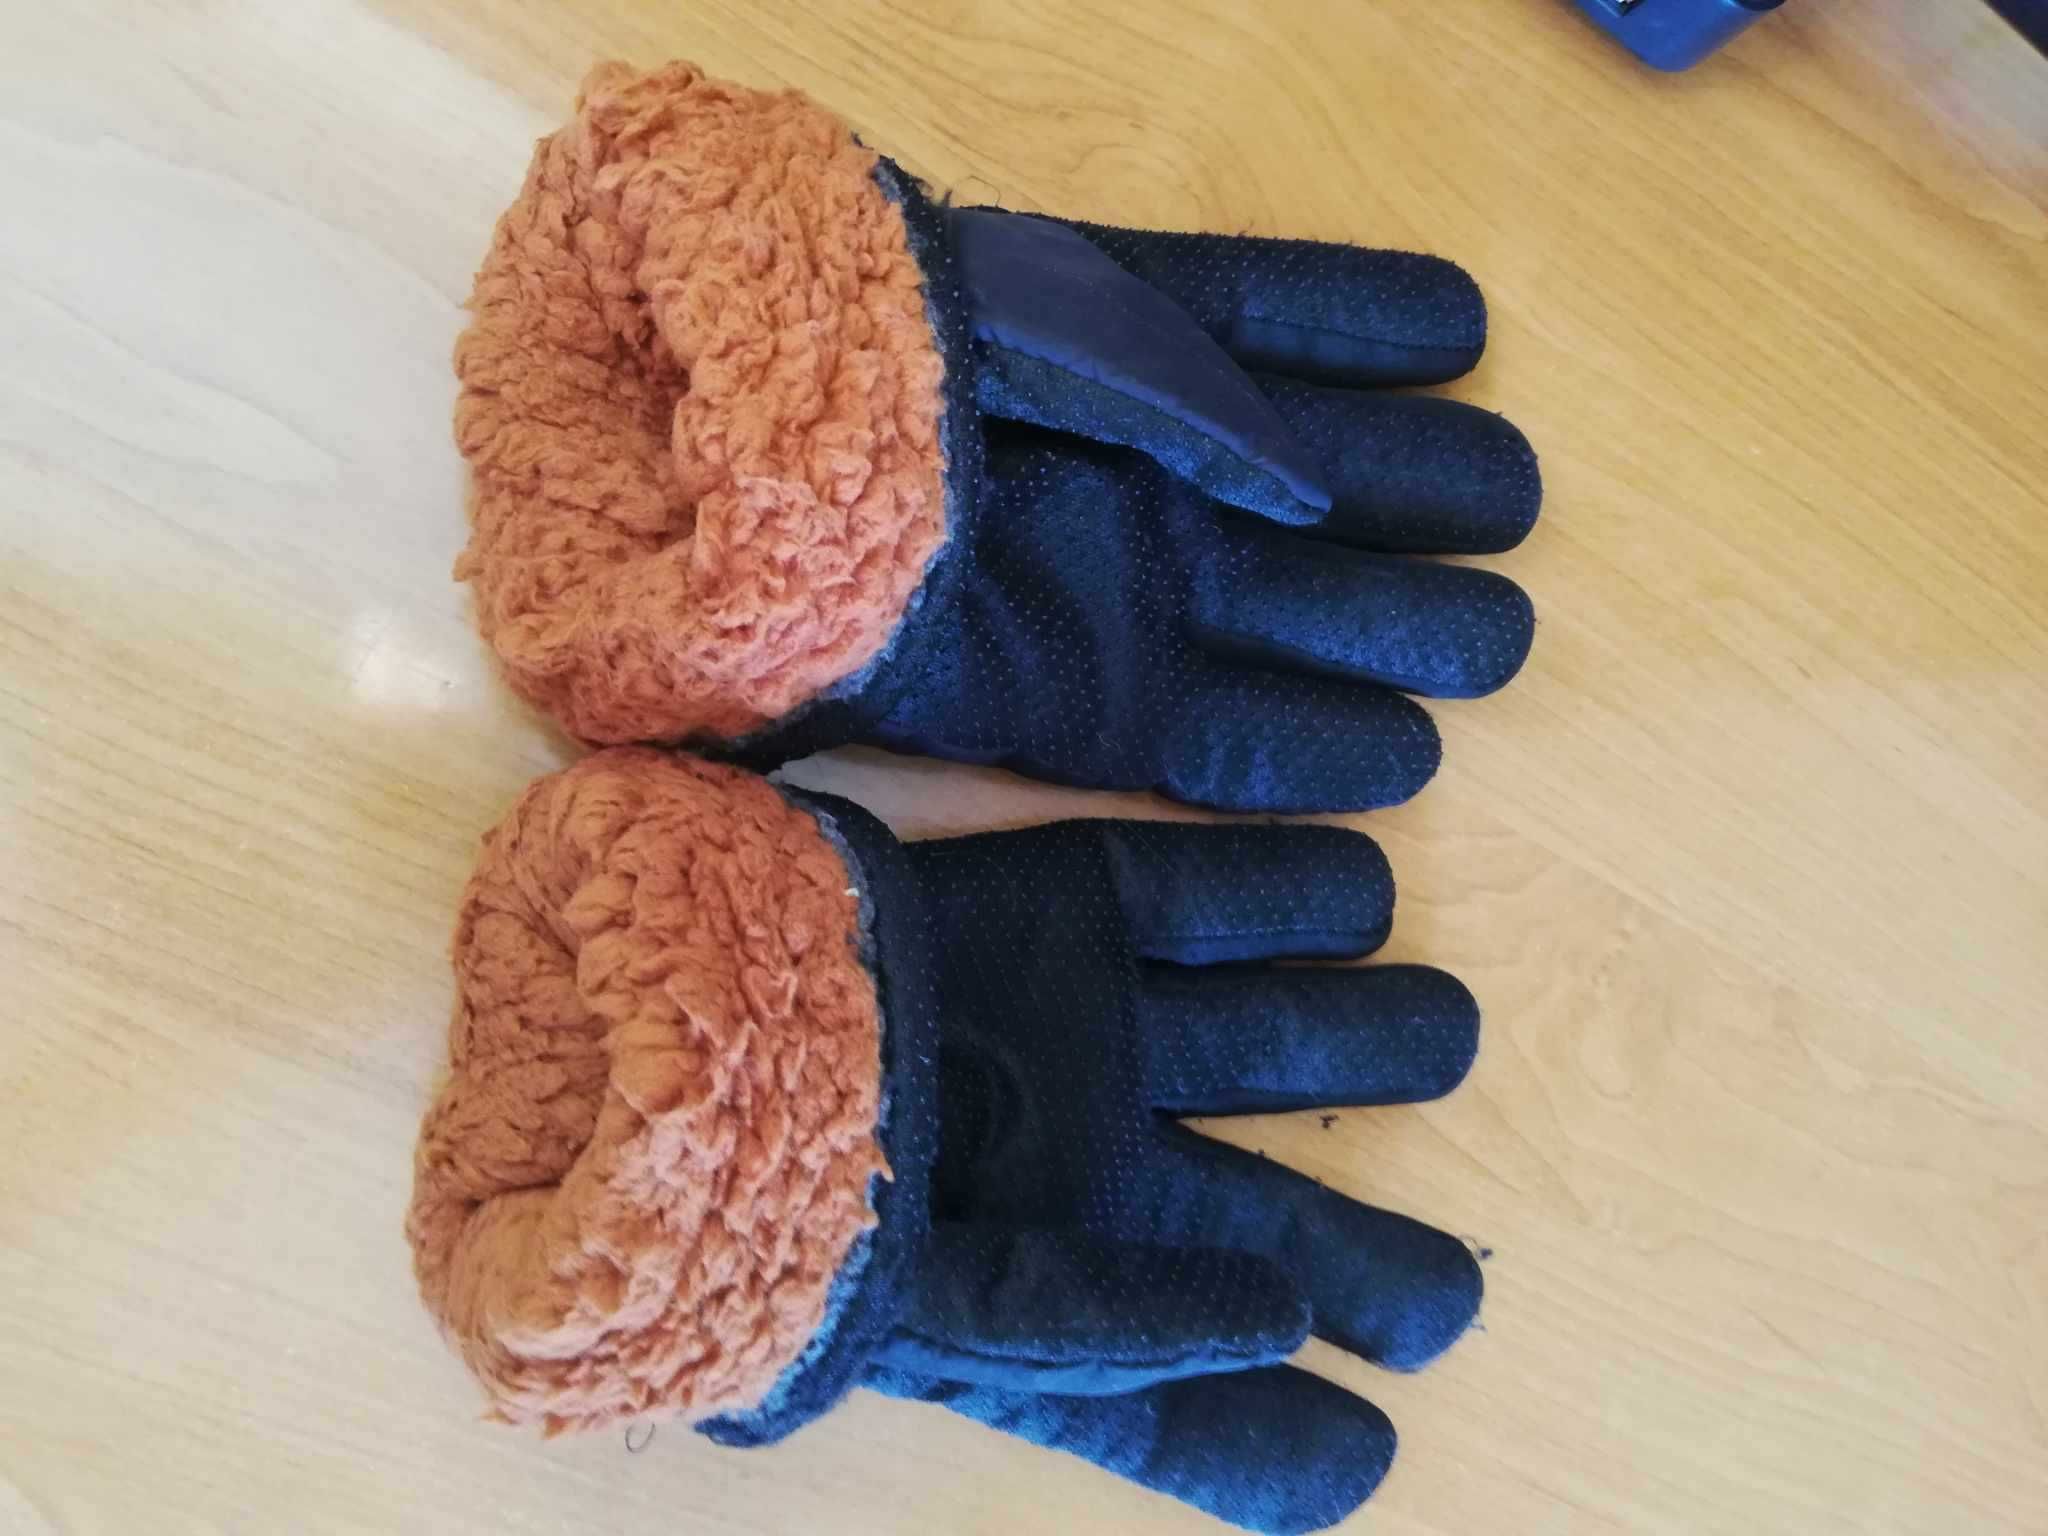 Rękawiczki narciarskie